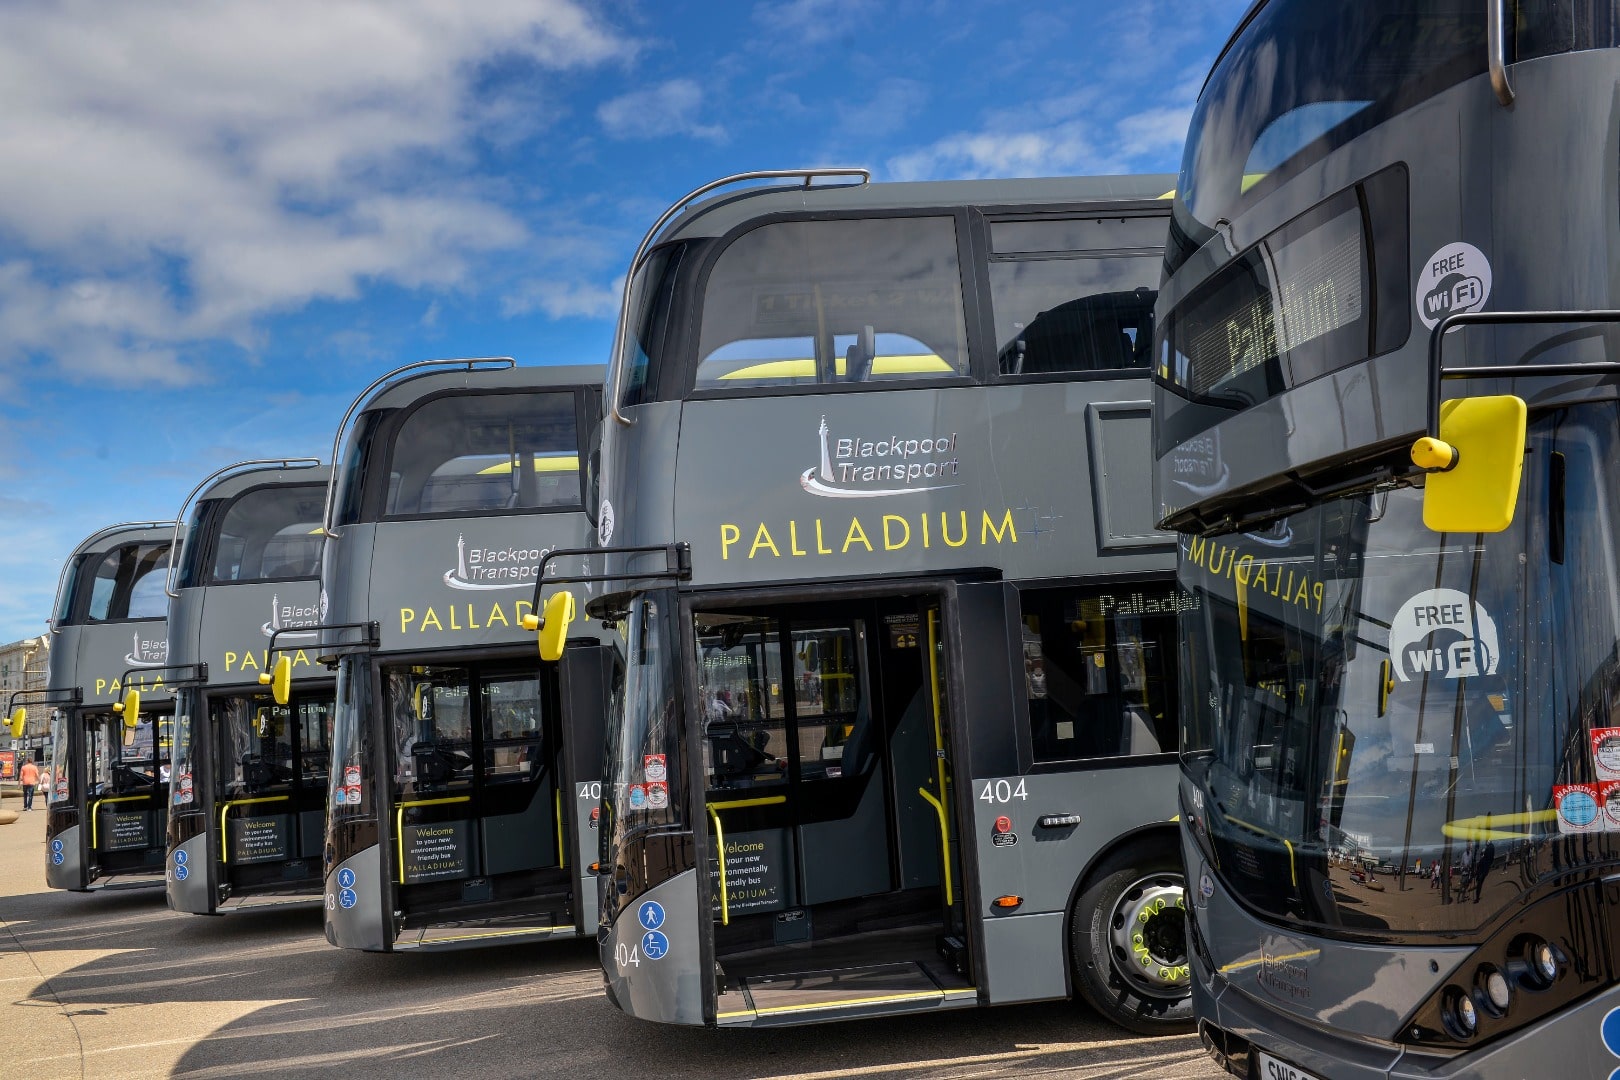 Blackpool Transport Palladium buses